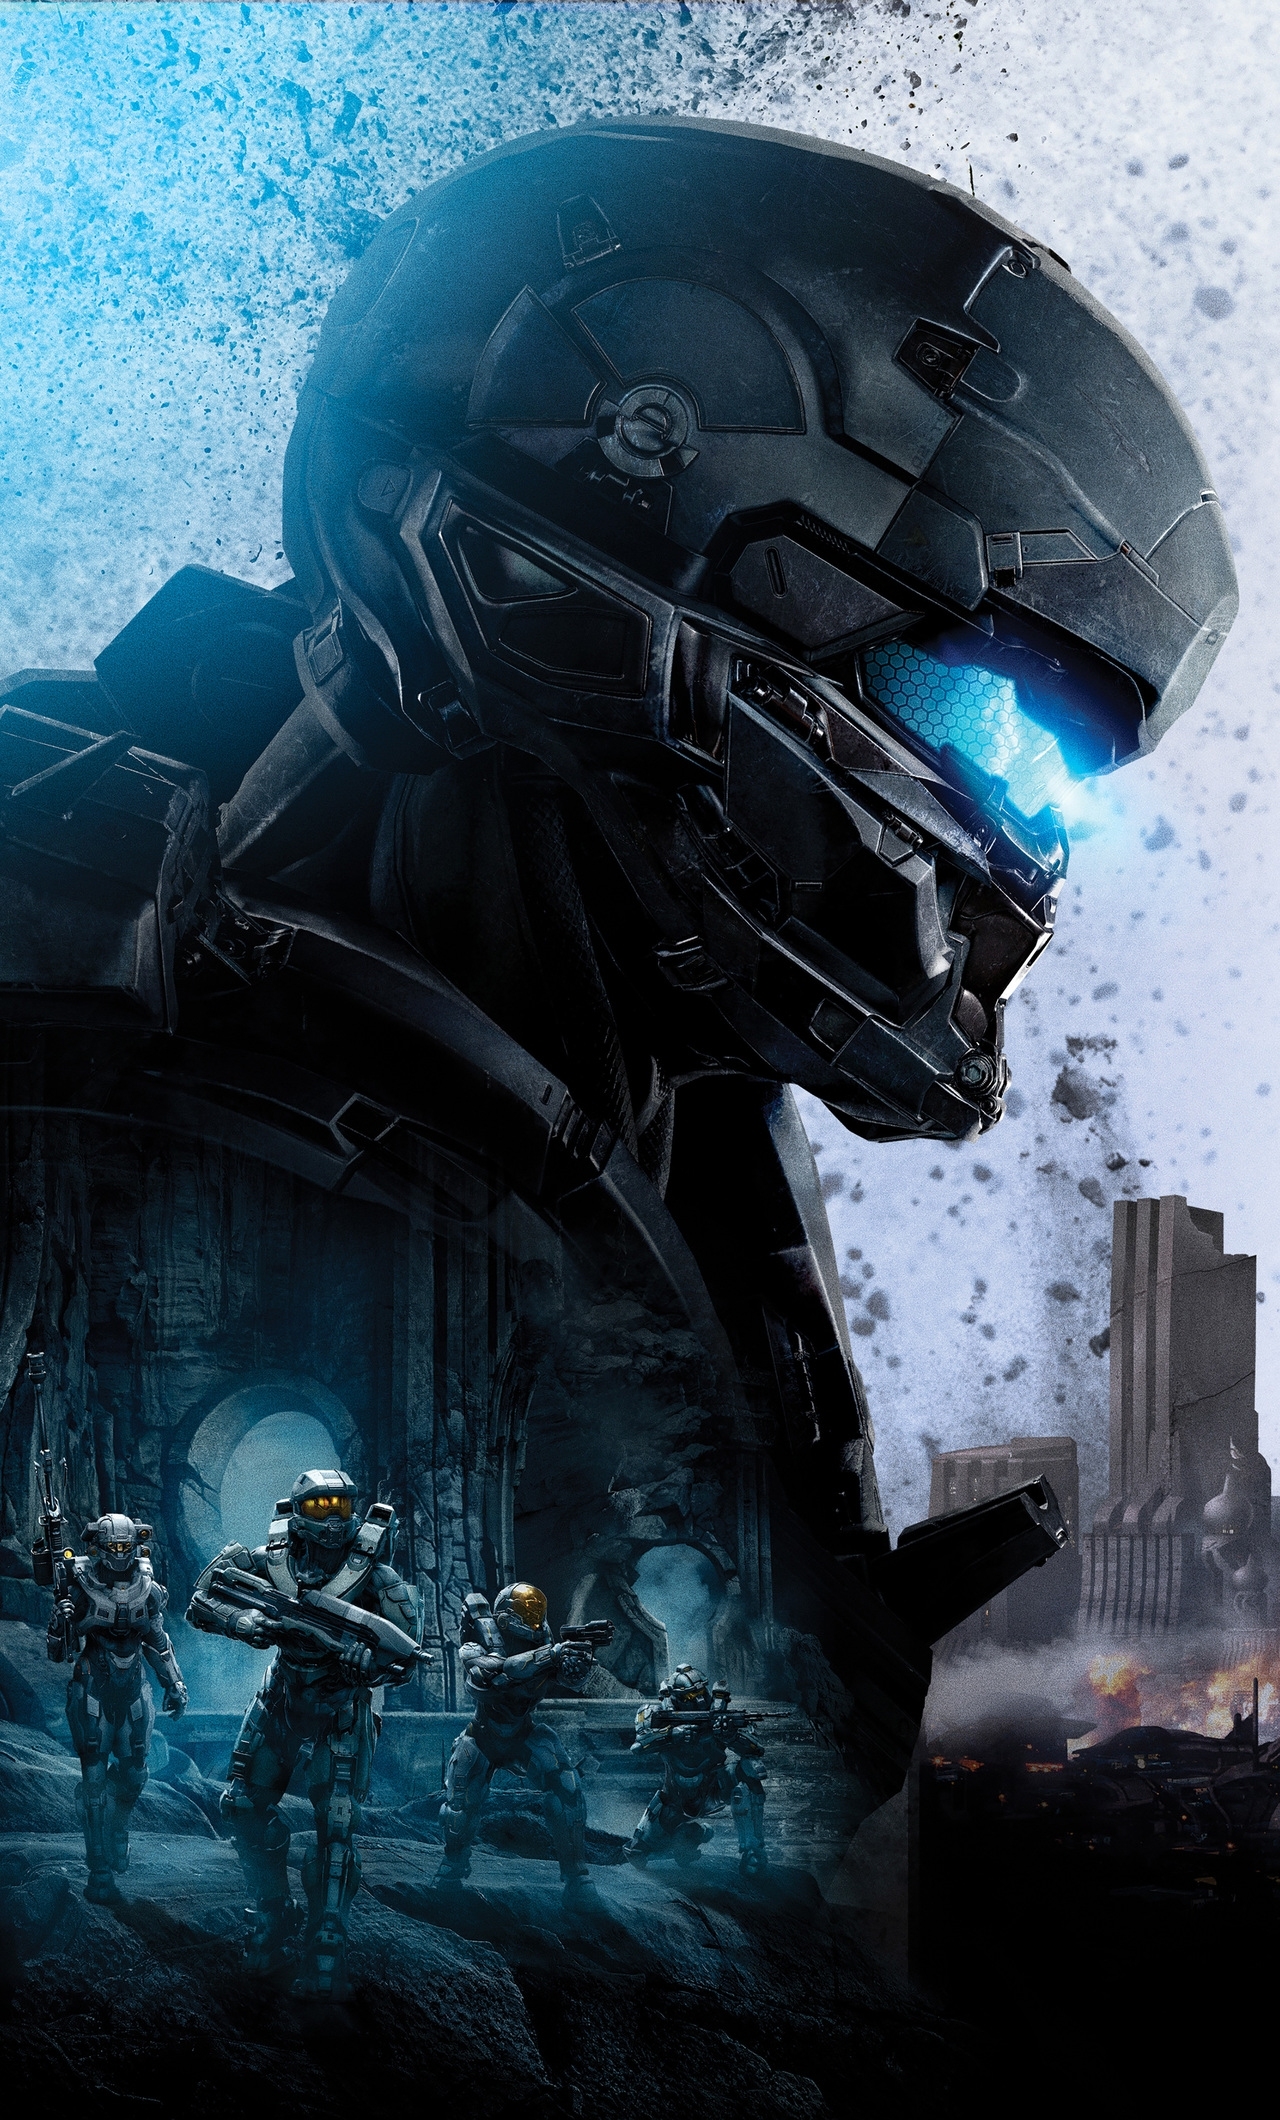 Locke Halo 5 Guardians 8k Iphone 6 Hd 4k Wallpapers - Halo 5 Wallpapers 4k - HD Wallpaper 